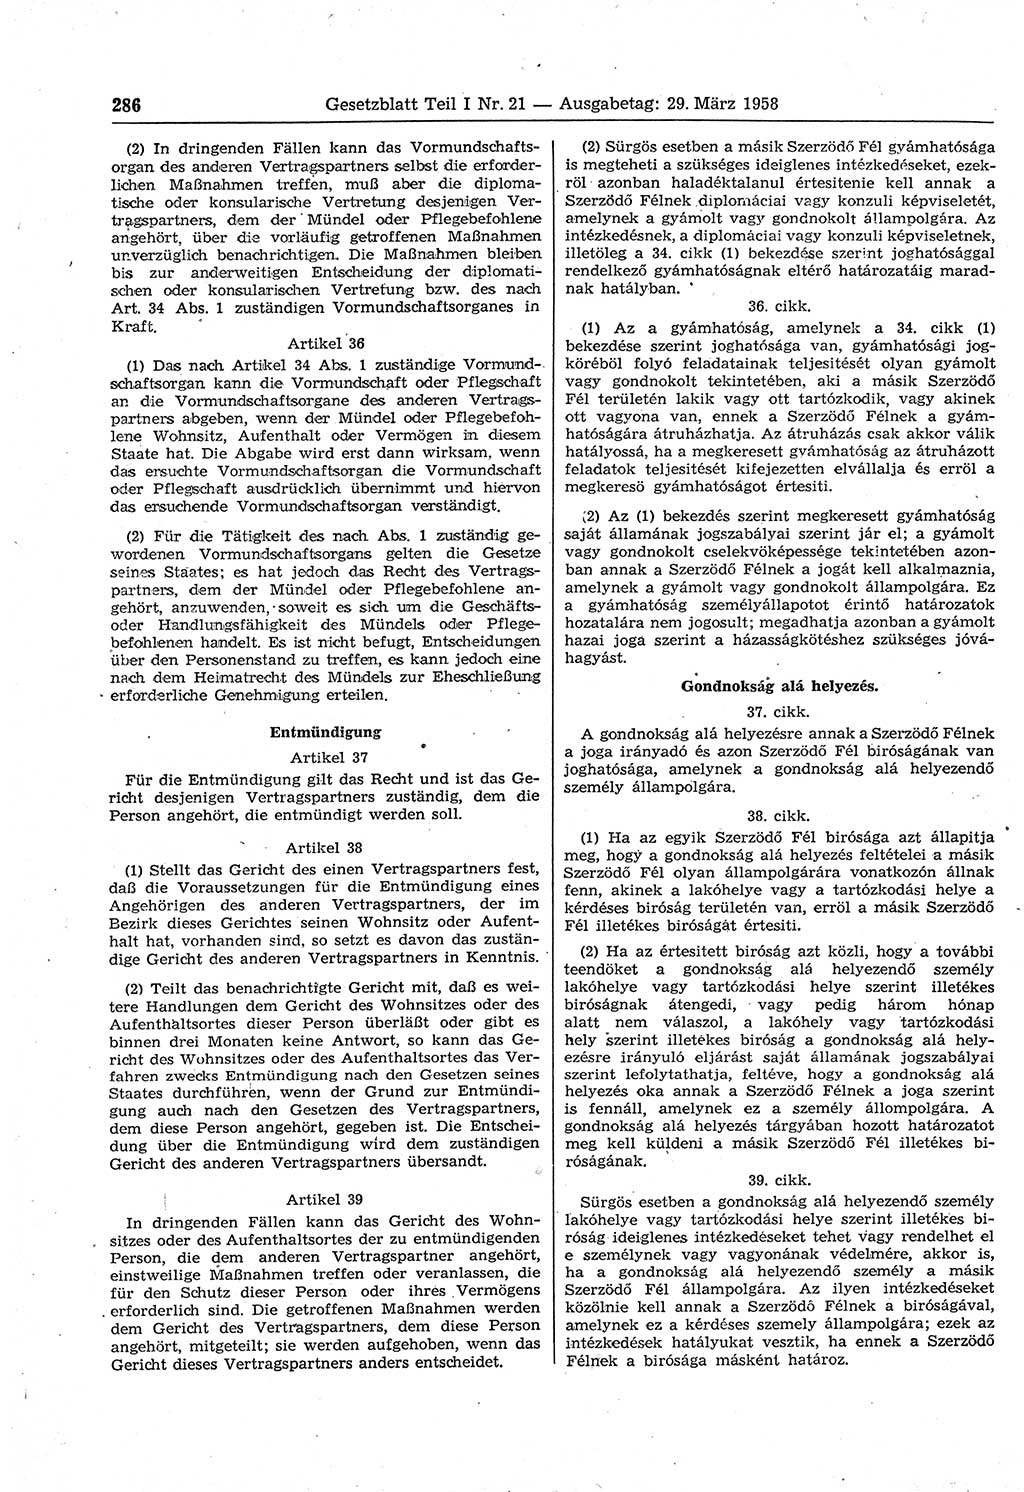 Gesetzblatt (GBl.) der Deutschen Demokratischen Republik (DDR) Teil Ⅰ 1958, Seite 286 (GBl. DDR Ⅰ 1958, S. 286)